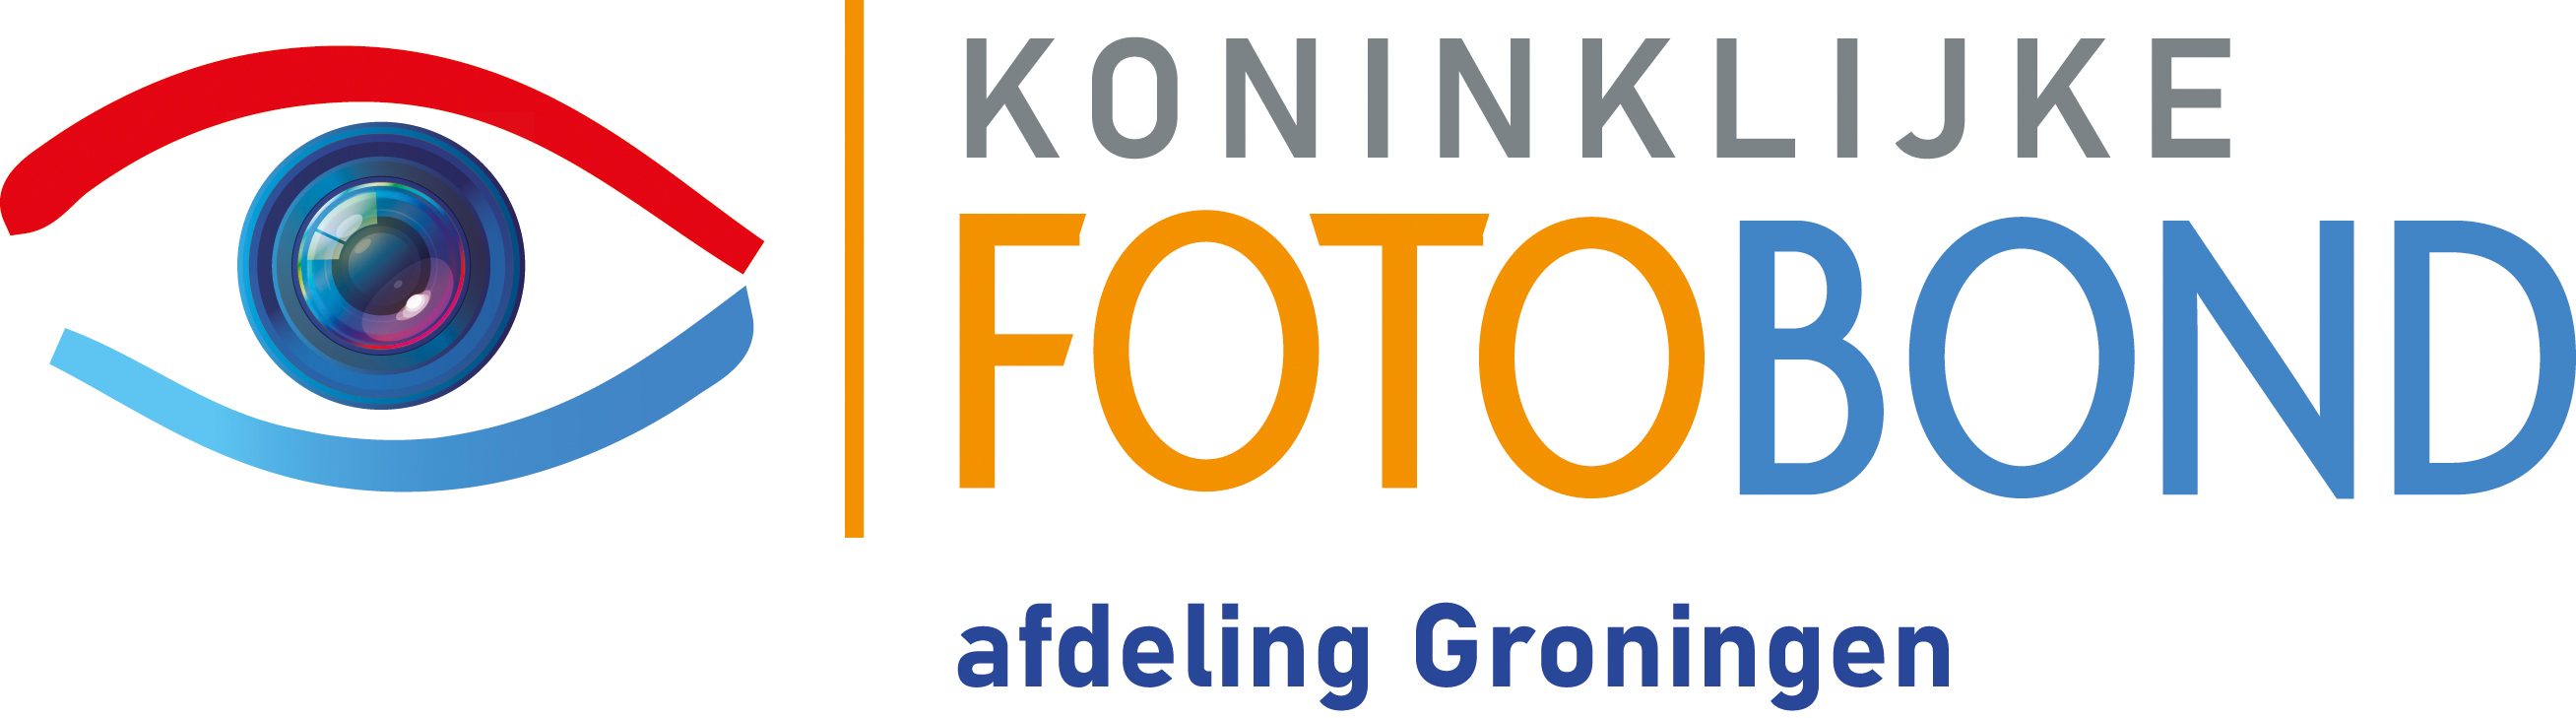 Logo Fotobond afdeling Groningen RGB.jpg